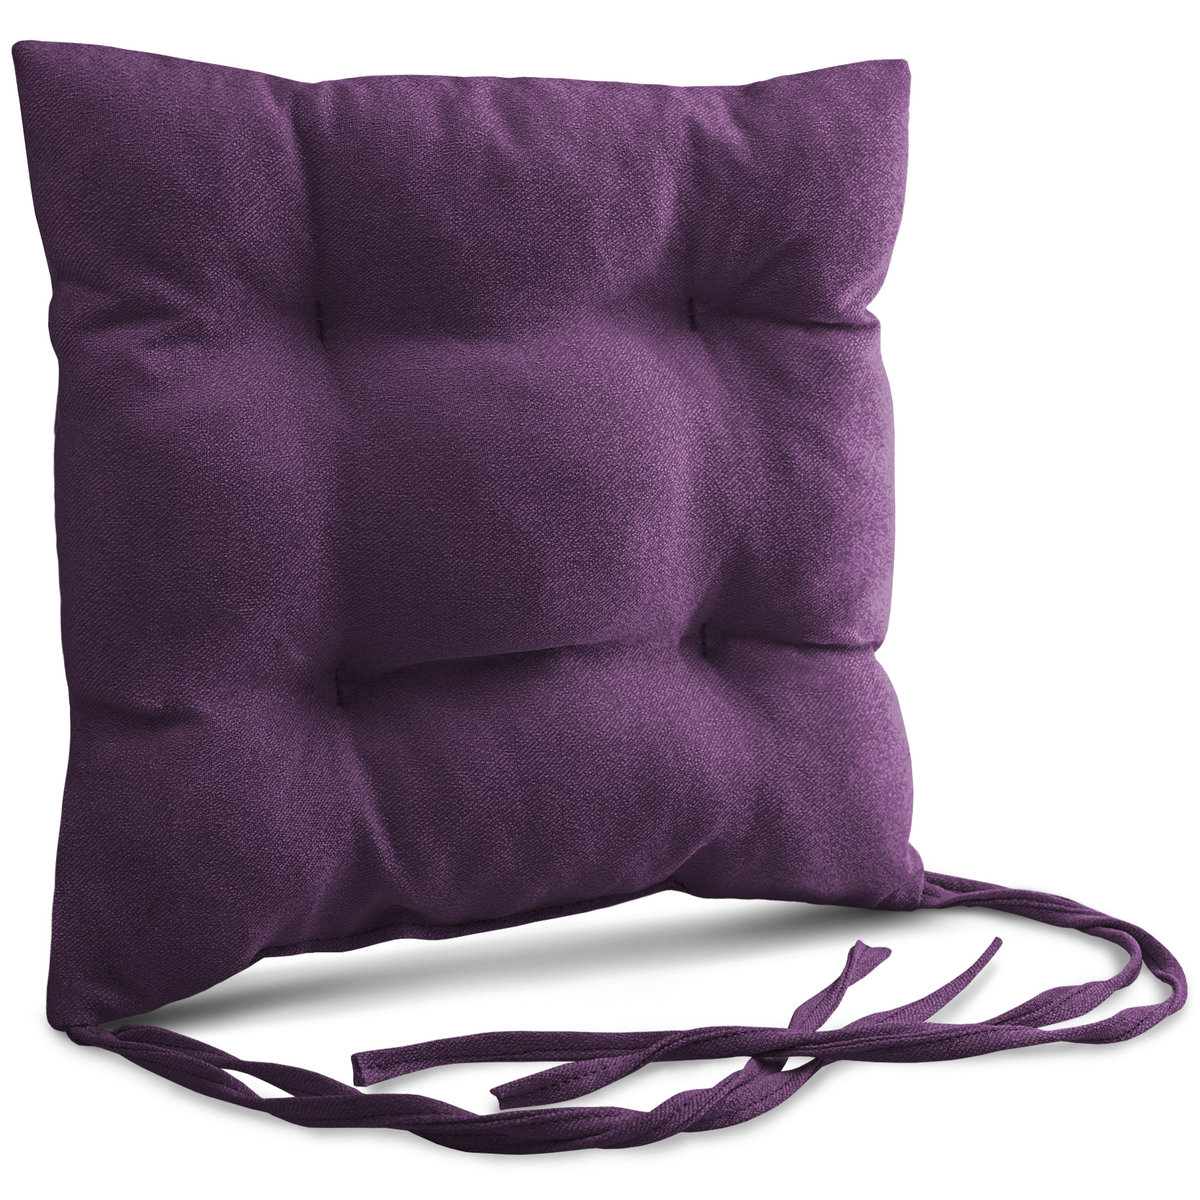 Poduszka ogrodowa na krzesło 40x40 cm w kolorze fioletowym ze sznureczkami do przywiązania